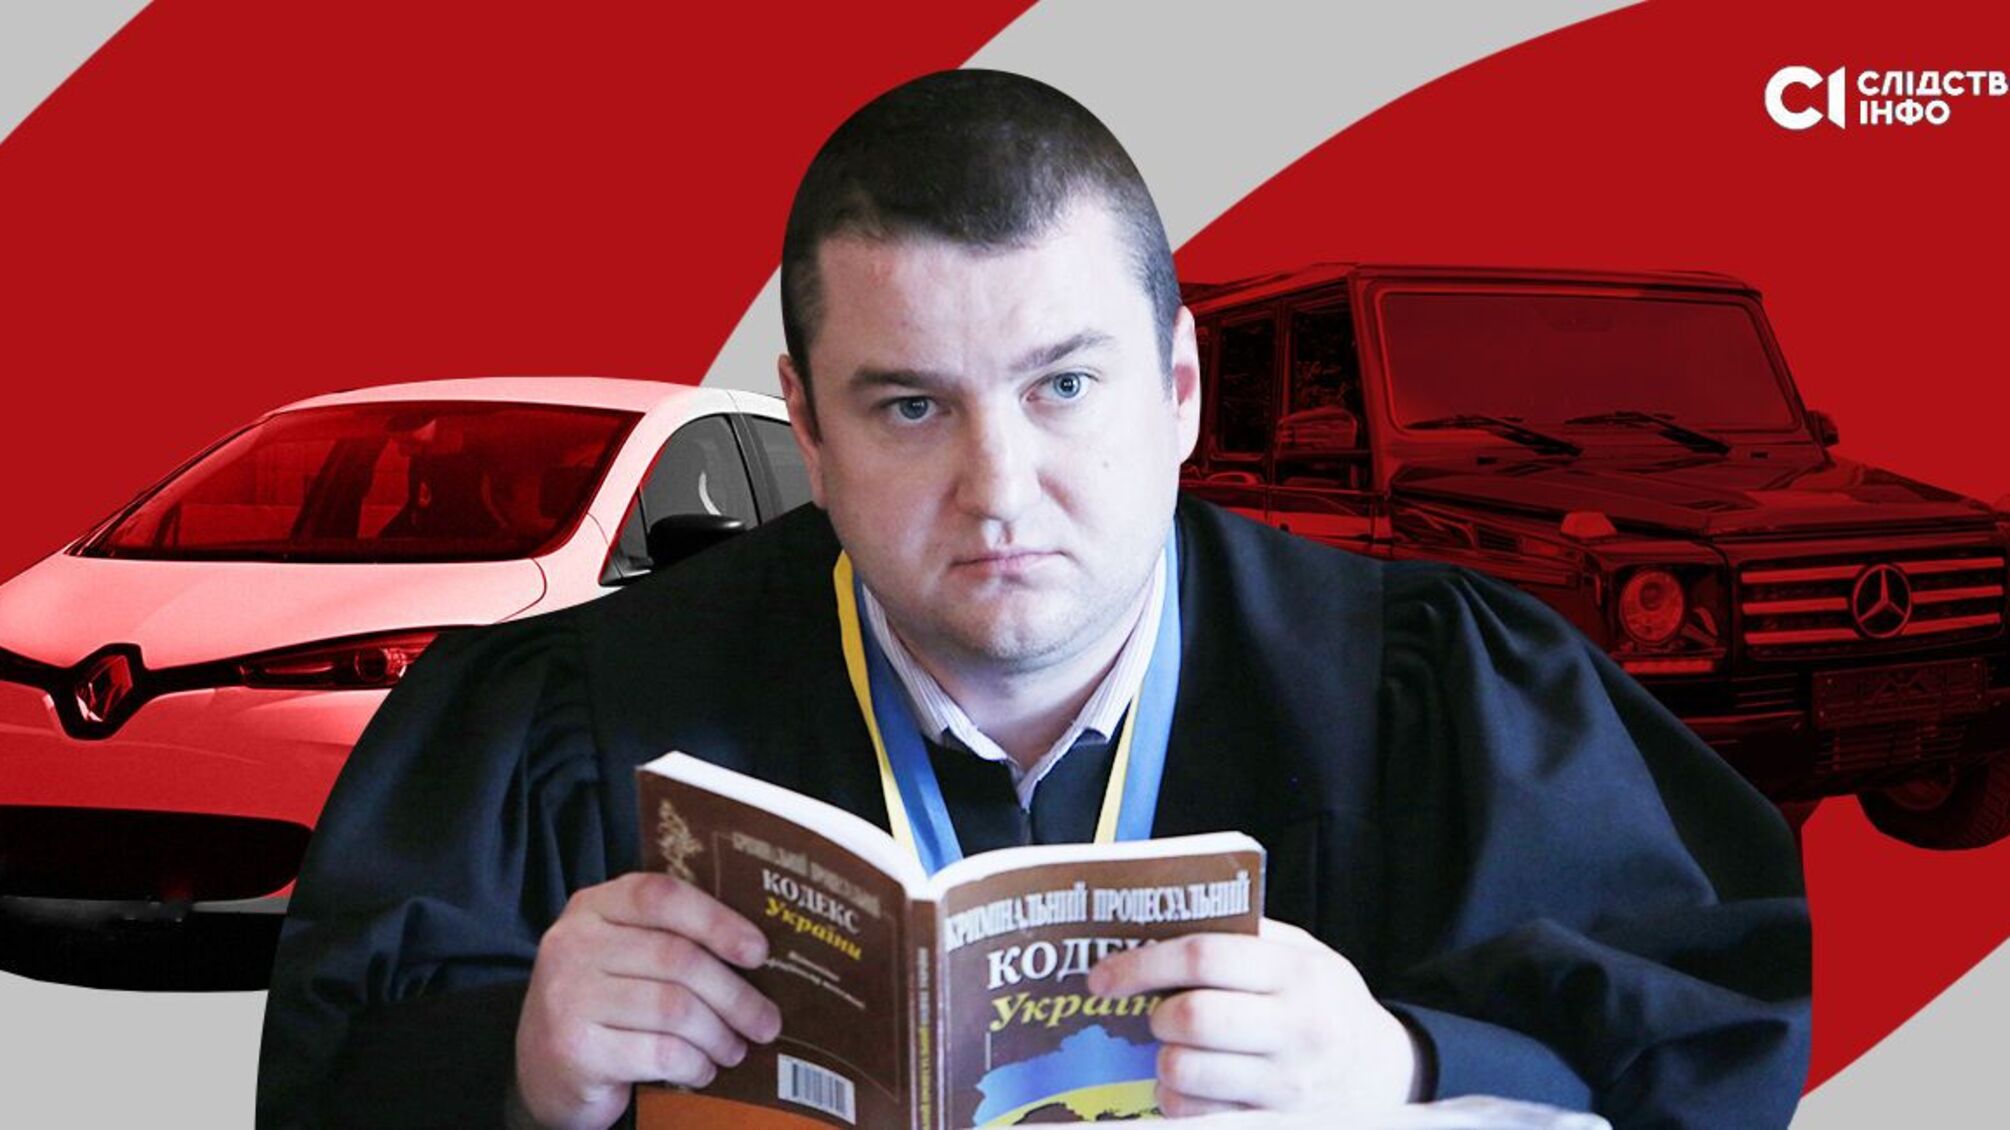 Судья Никушин обновил автопарк: элитные авто по символической цене 10 000 грн, – СМИ